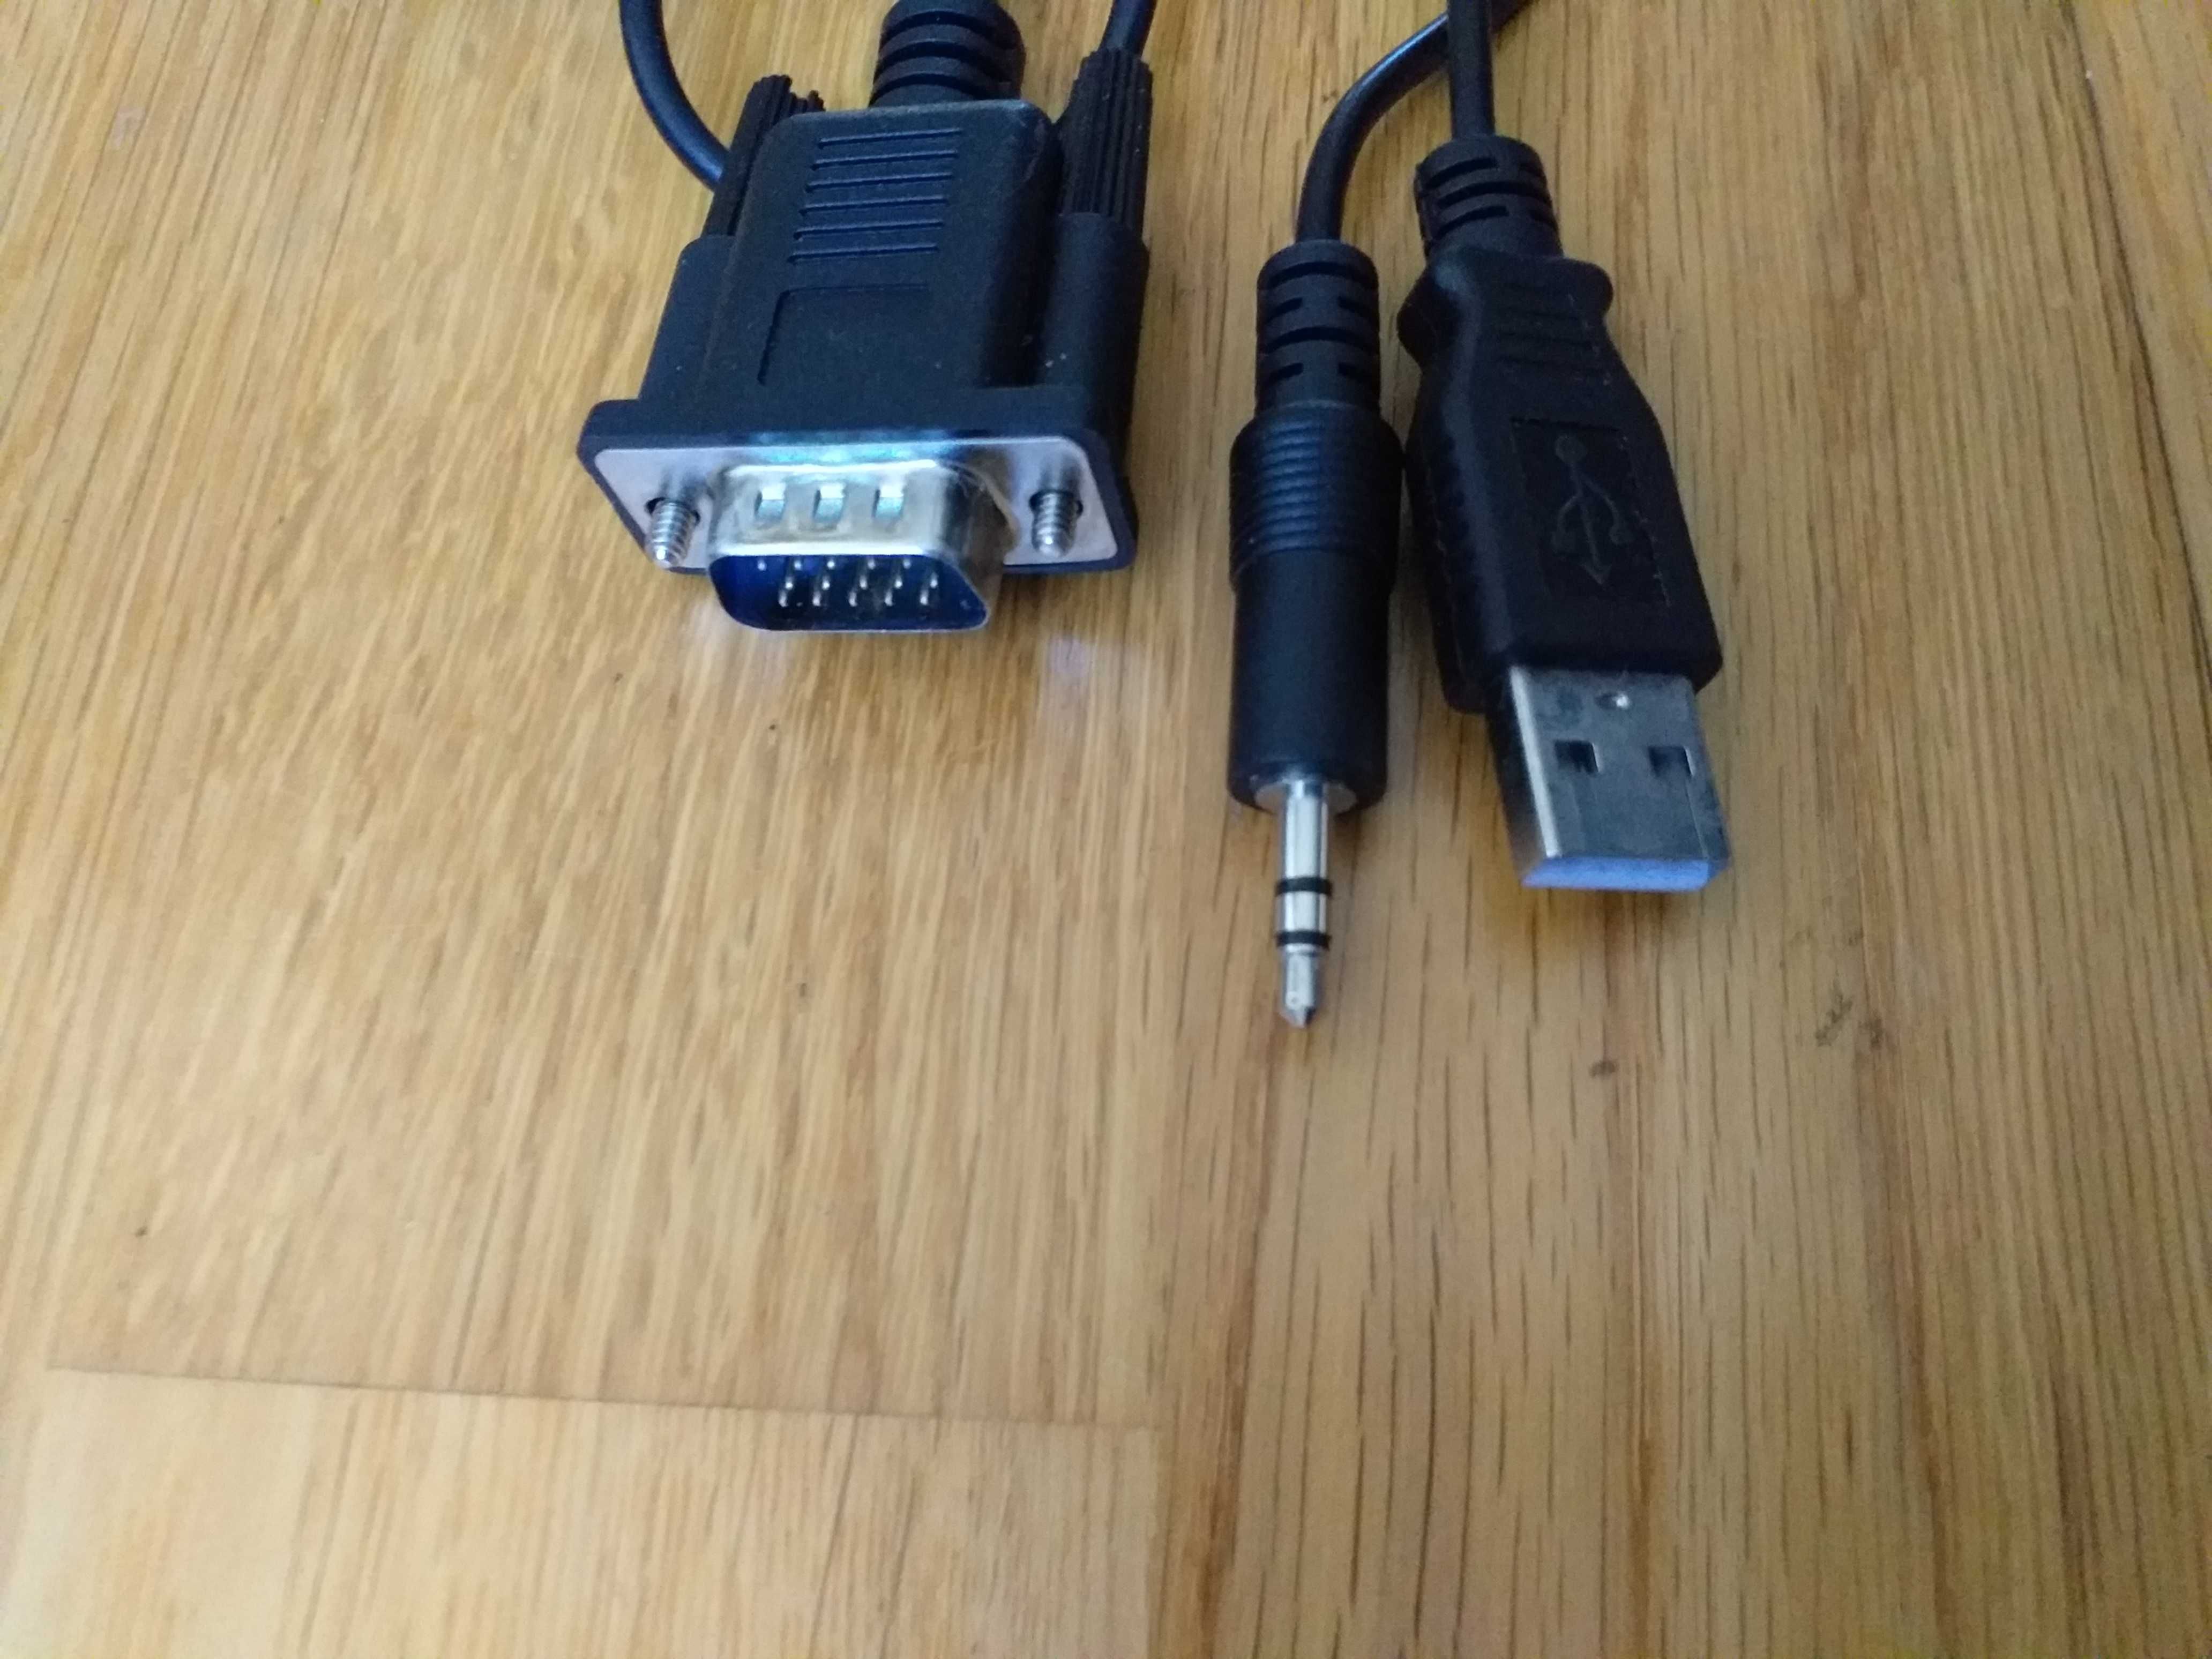 Cabo adaptador de VGA para HDMI, marca MITSAI